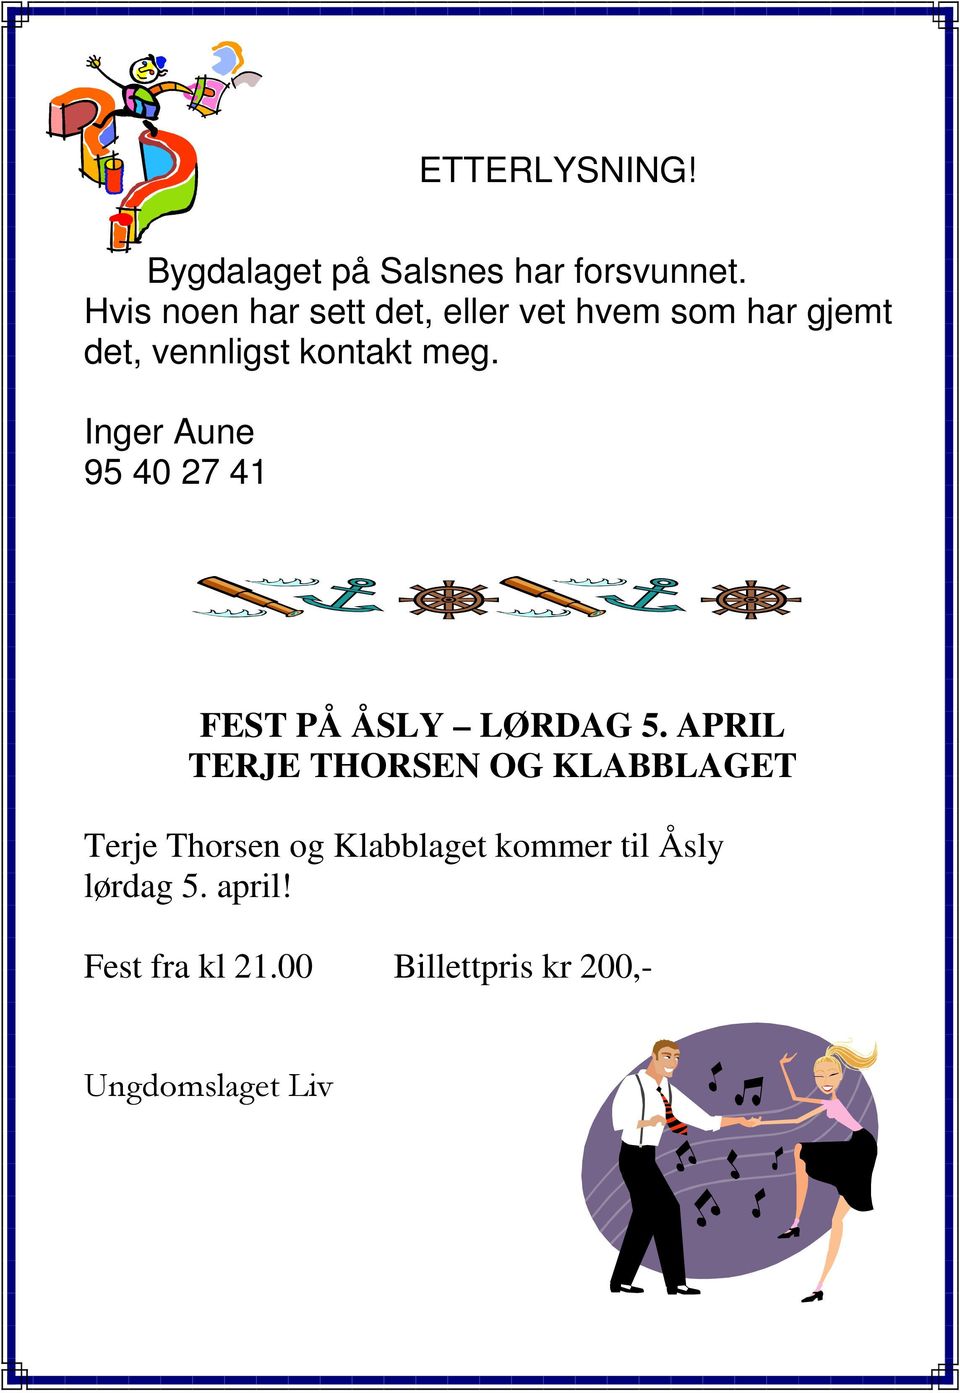 Inger Aune 95 40 27 41 FEST PÅ ÅSLY LØRDAG 5.